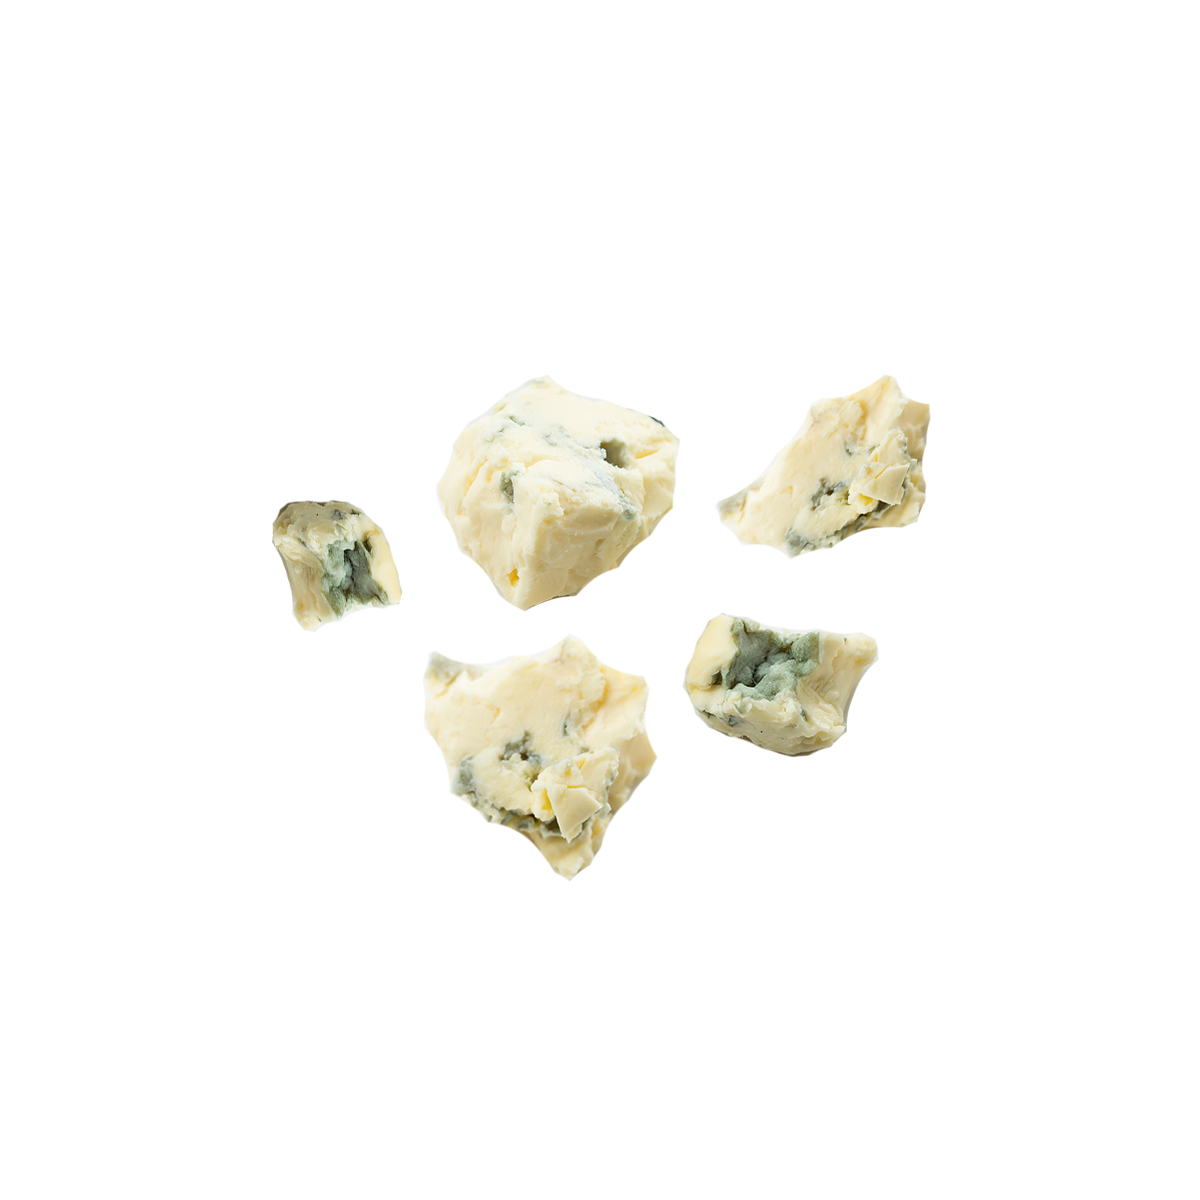 Stella Blue Cheese Crumbles